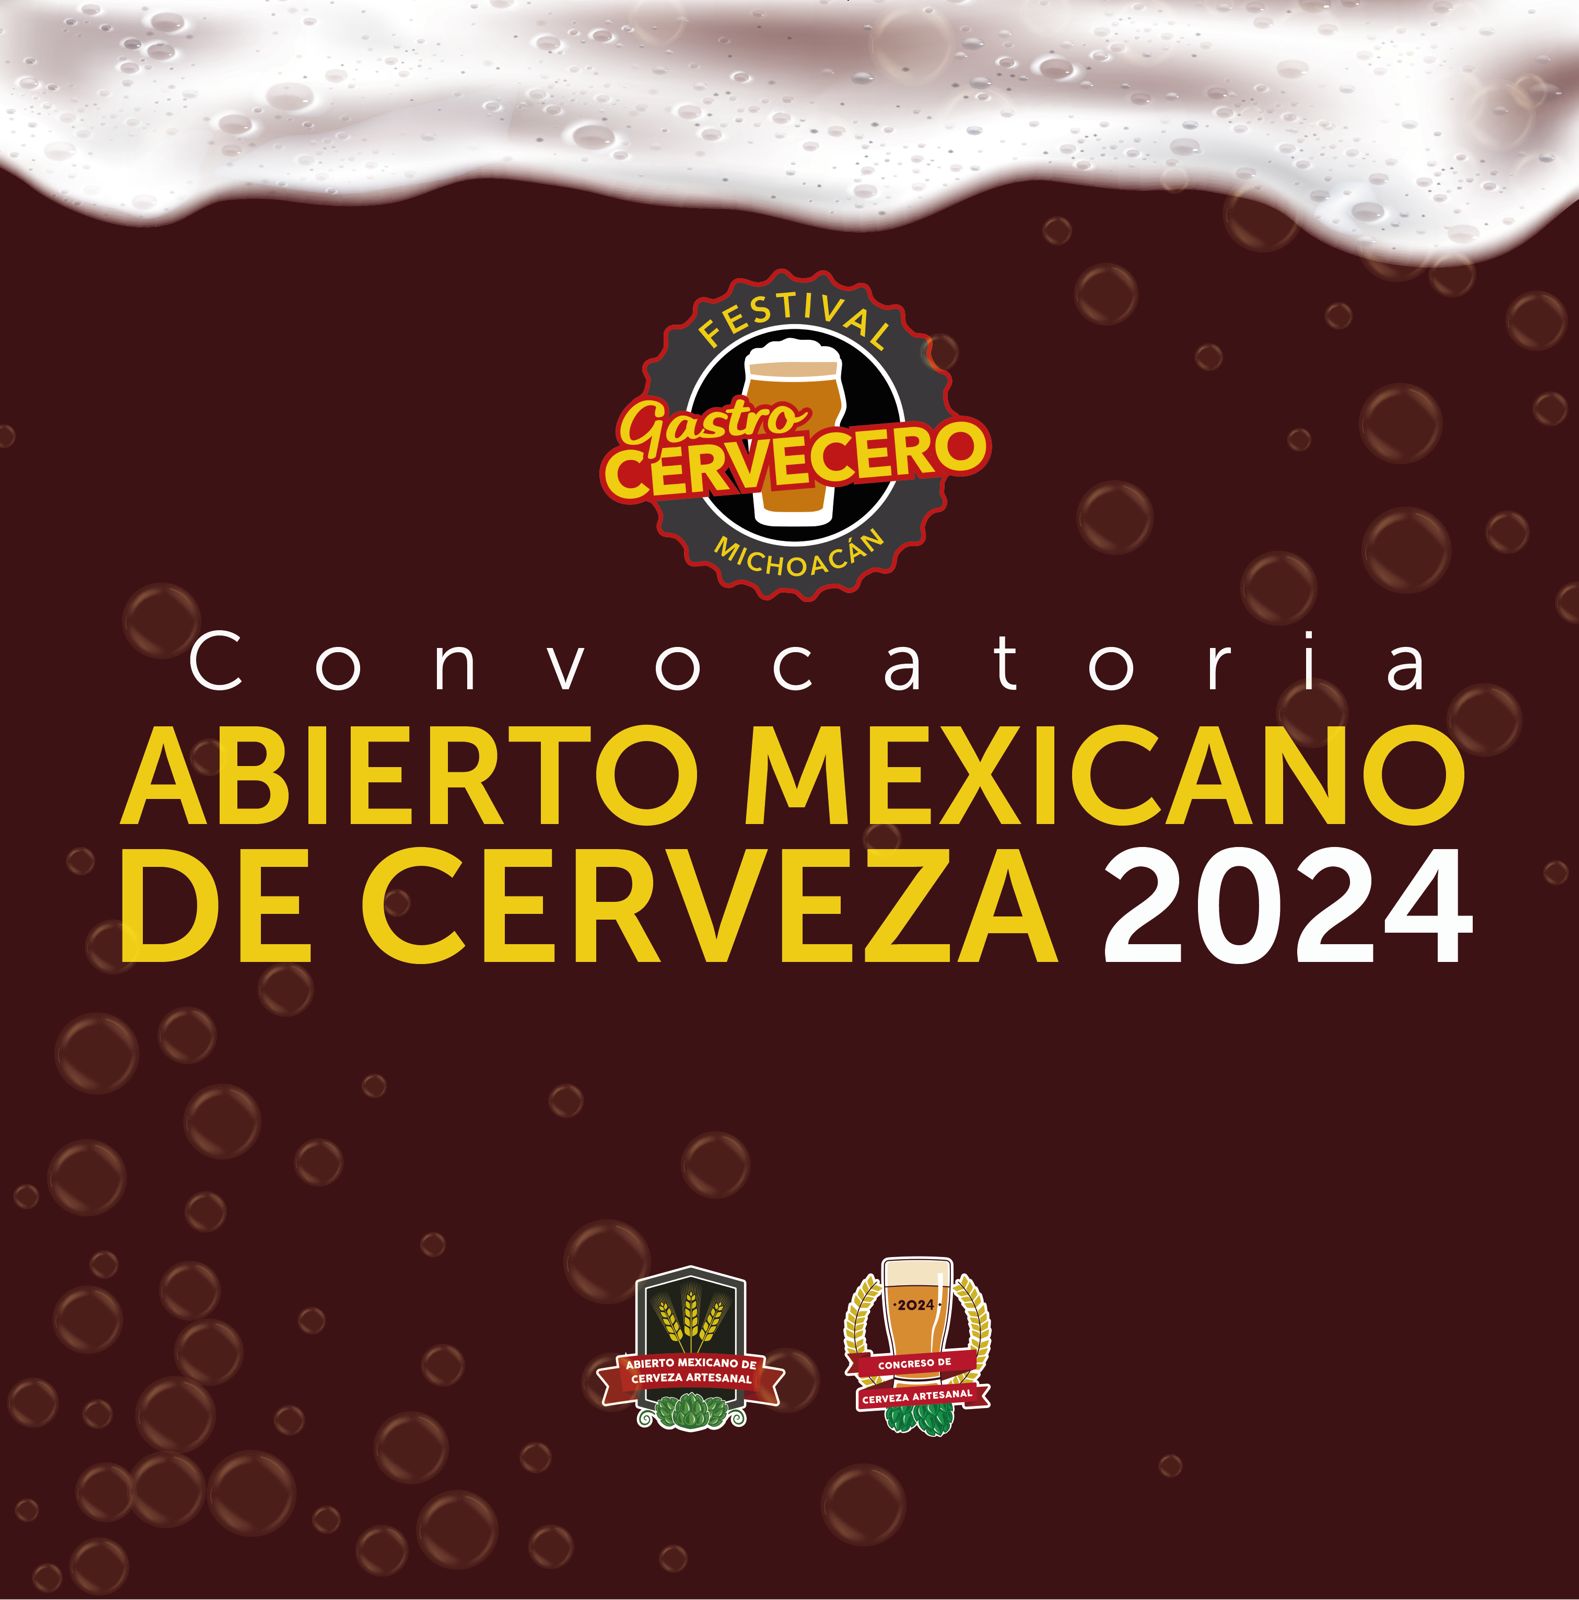 Conoce todos los detalles del Abierto Mexicano de Cerveza Artesanal 2024